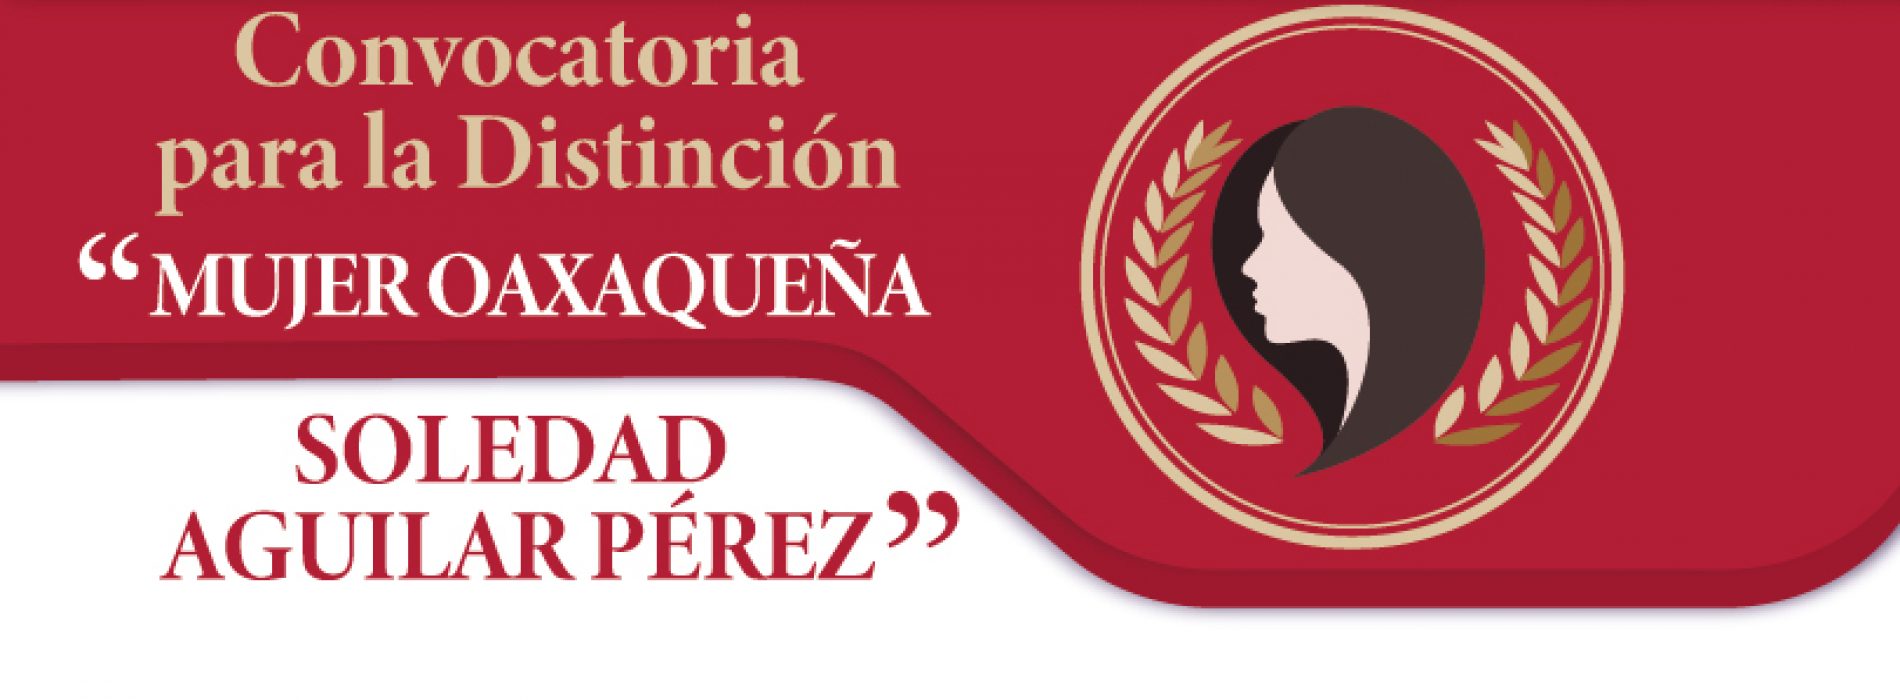 Presenta Ayuntamiento convocatoria para otorgar la Distinción “Mujer Oaxaqueña Soledad Aguilar Pérez”